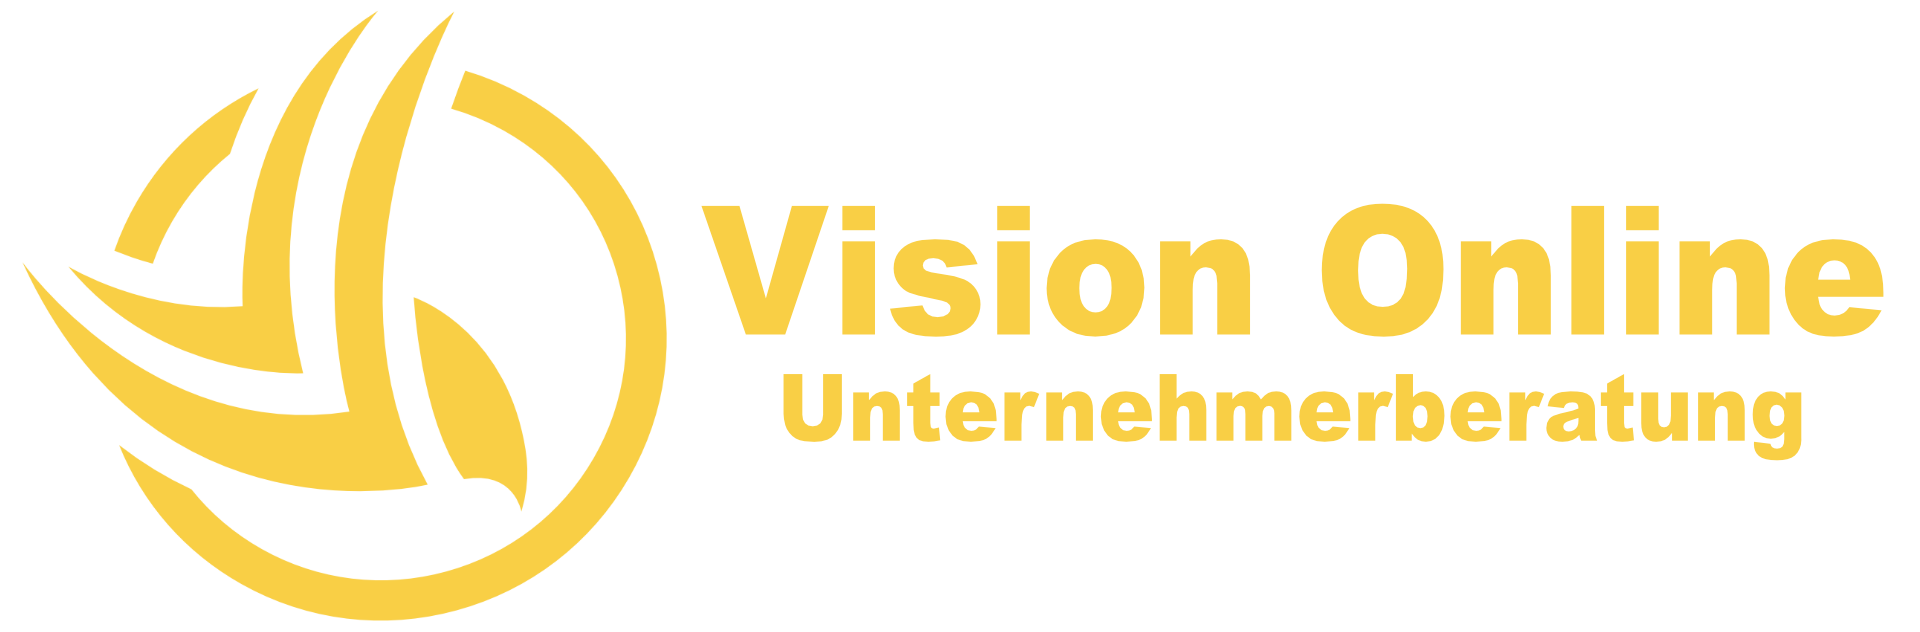 Vision Online